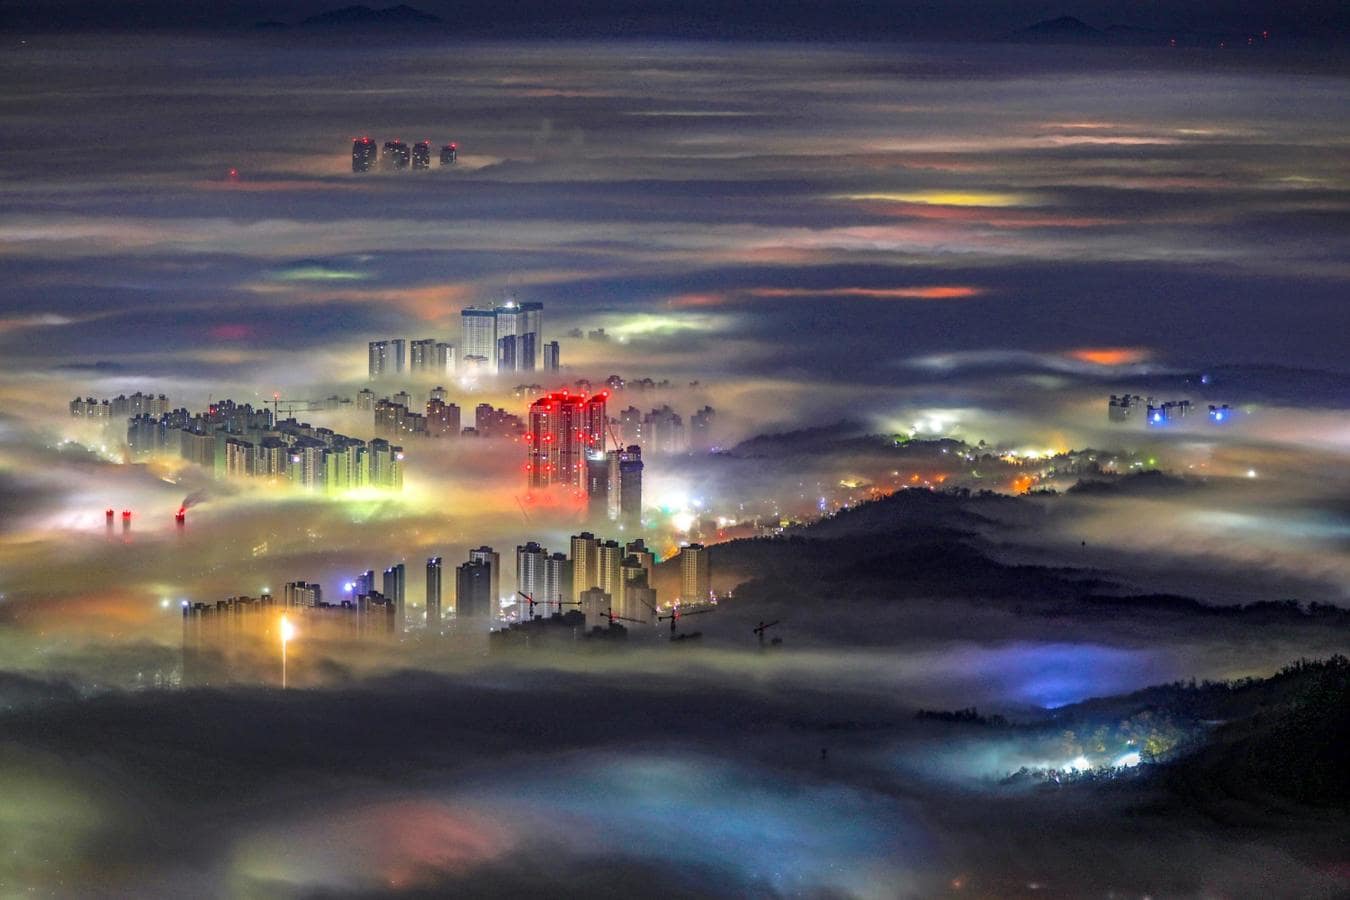 Ciudad entre la niebla. Localización: Bukhansan Mountain, Goyang, Gyeonggi Province, Republic of Korea